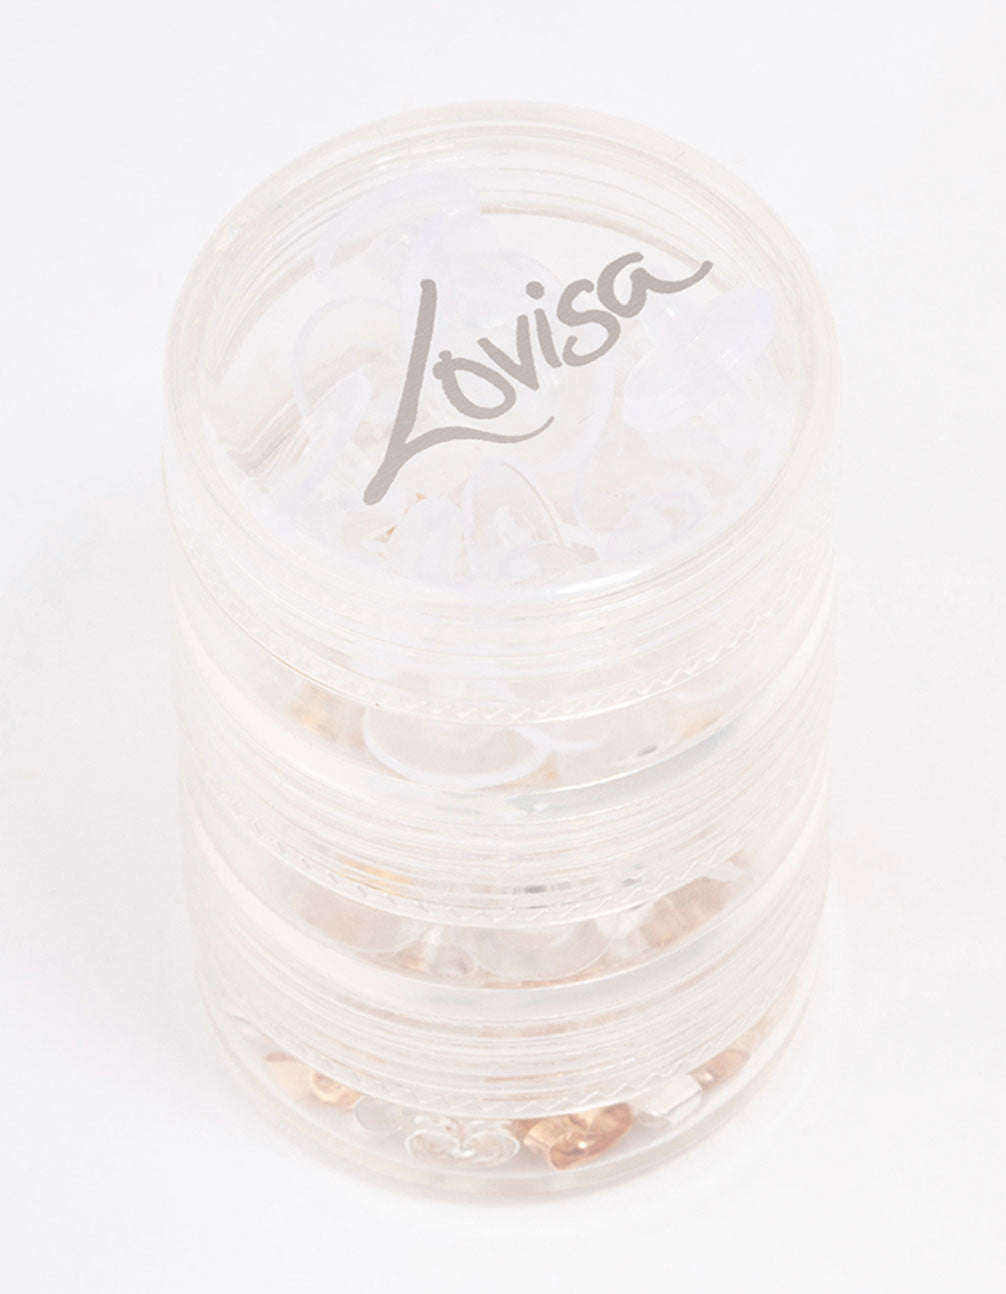 Lovisa Mixed Metal Jewellery Repair Kit